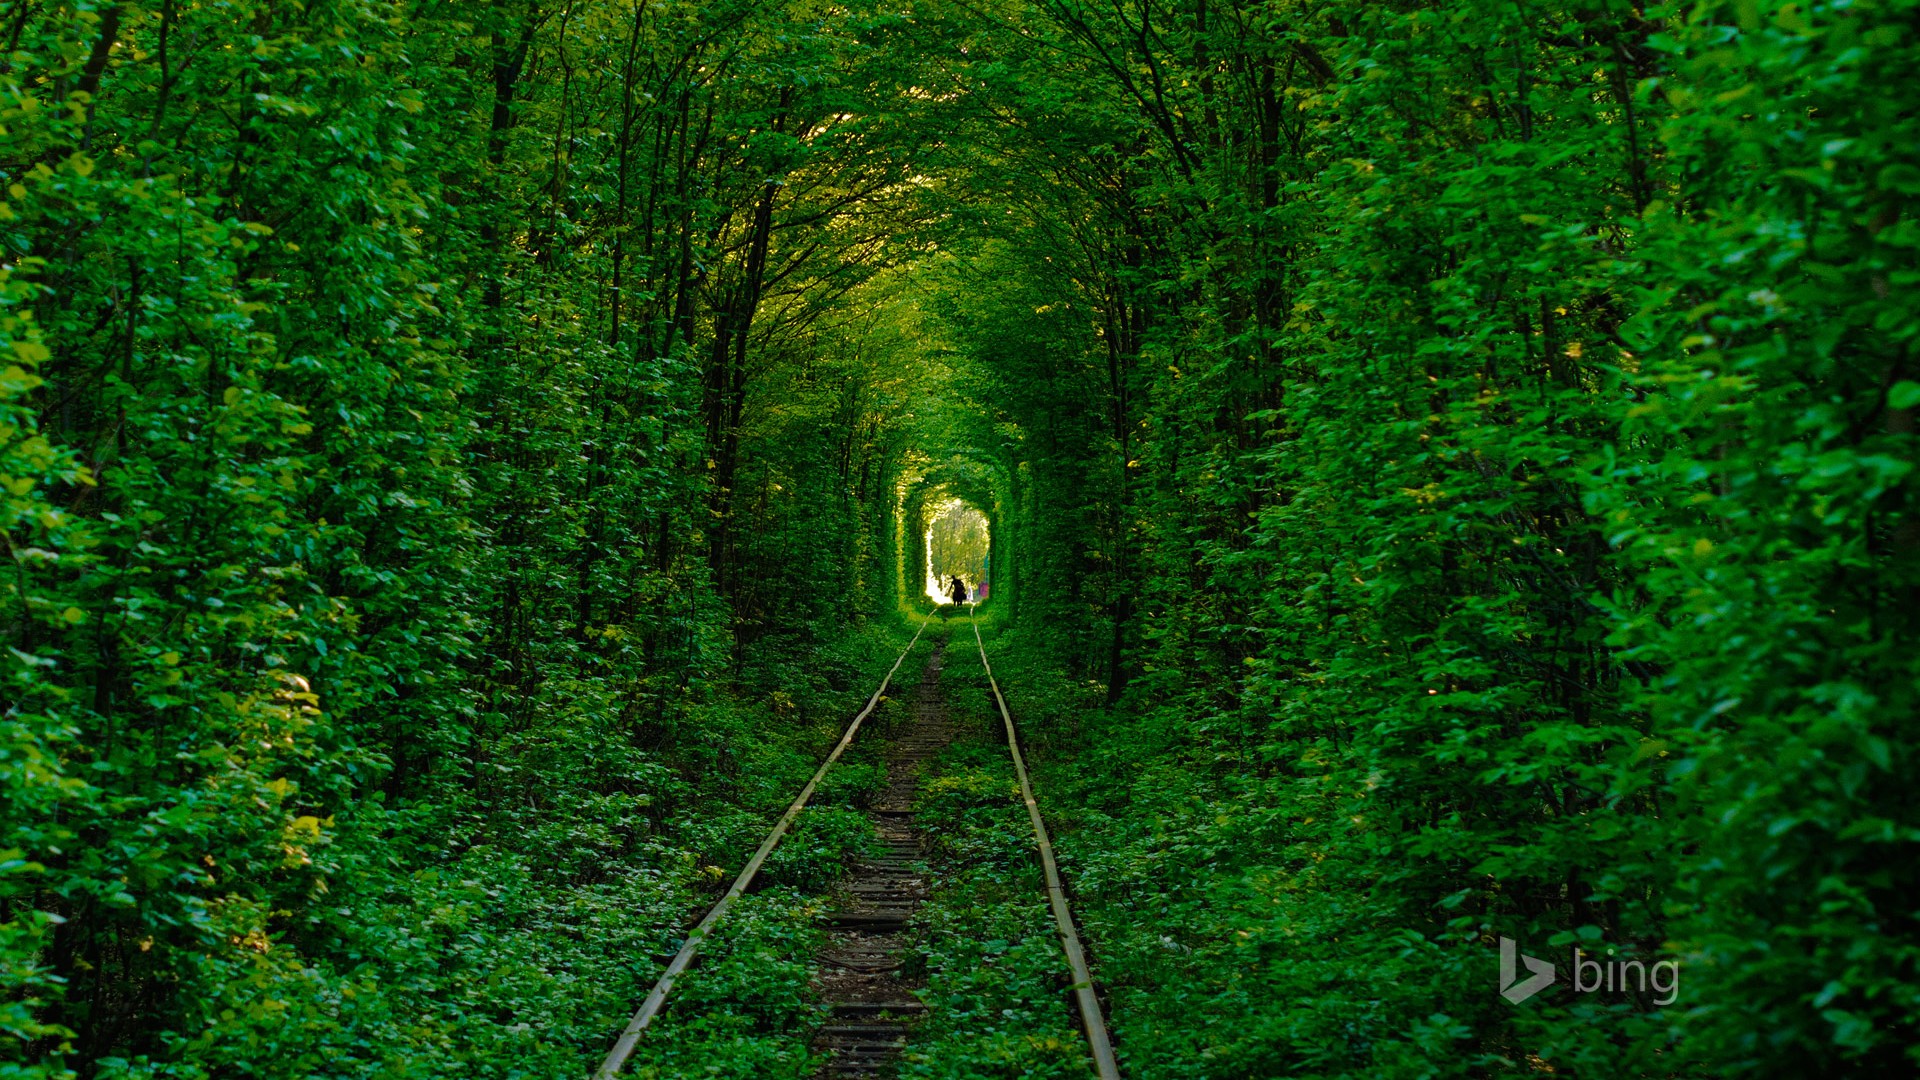 乌克兰爱的隧道,森林,护眼,绿色,美丽的自然风景桌面壁纸